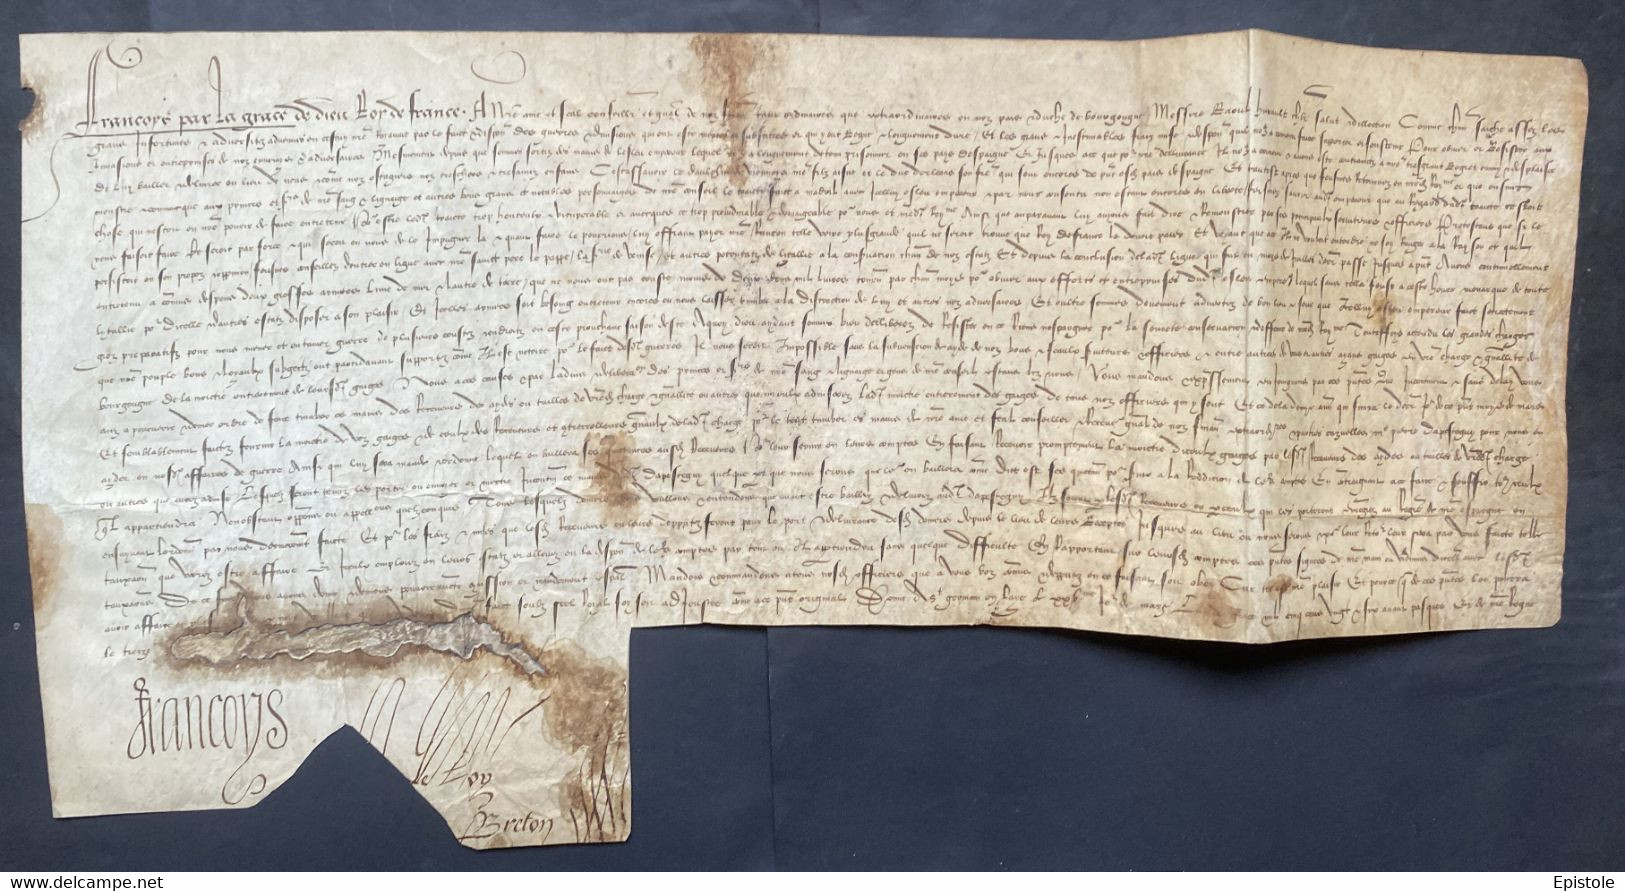 FRANÇOIS Ier Roi De France – Lettre Signée – Guerre Vs Charles Quint, Captivité Et Otages - 1526 - Historische Personen